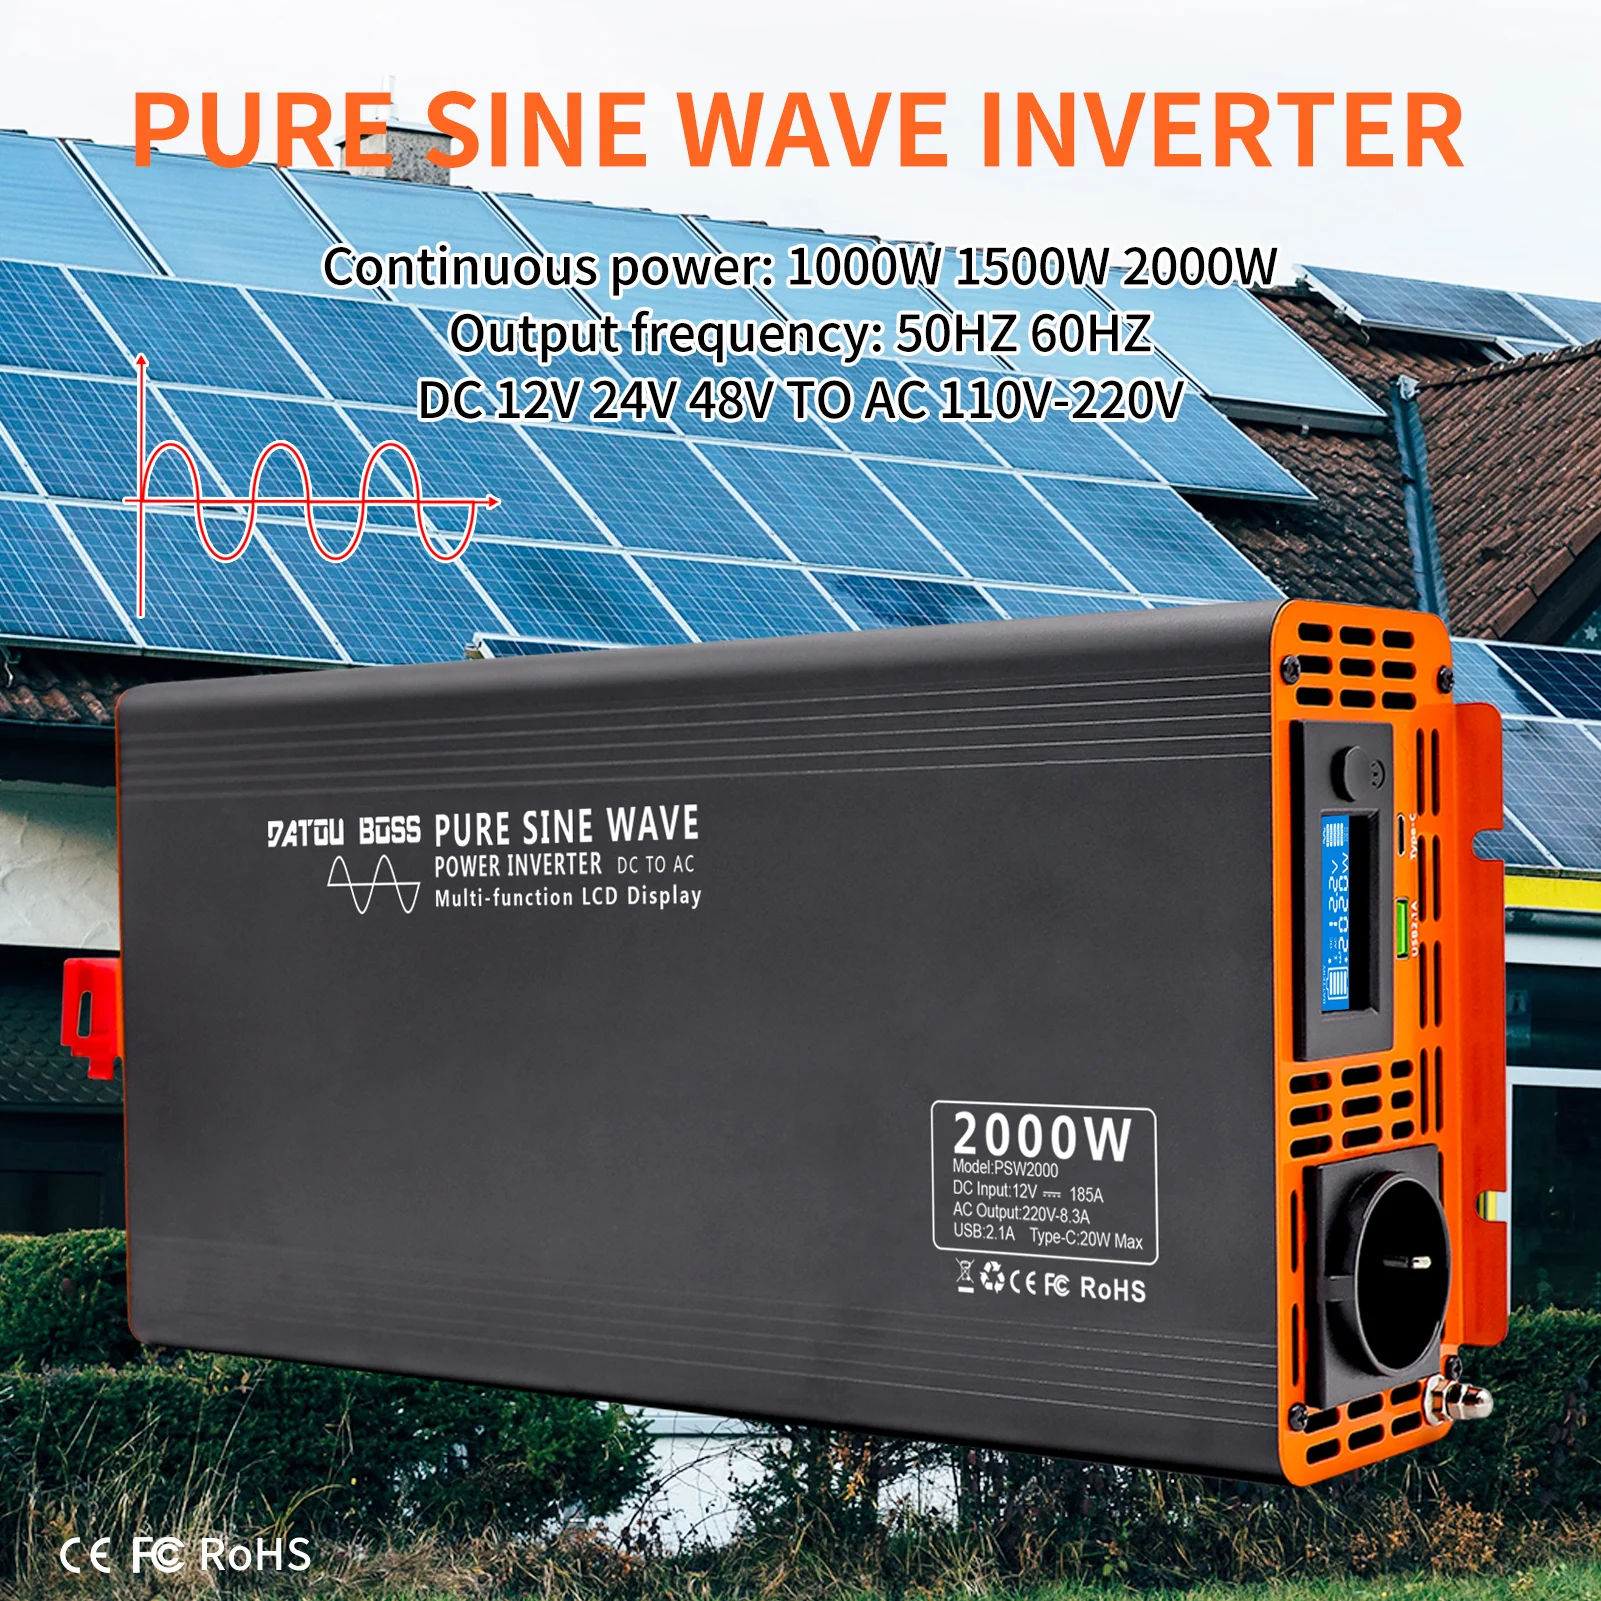 

DATOUBOSS Pure Sine Wave Inverter 4000W DC 12V 24V 36V 48V 60V 72V to AC 220V 240V Power Inverter Continuous Power 2000W